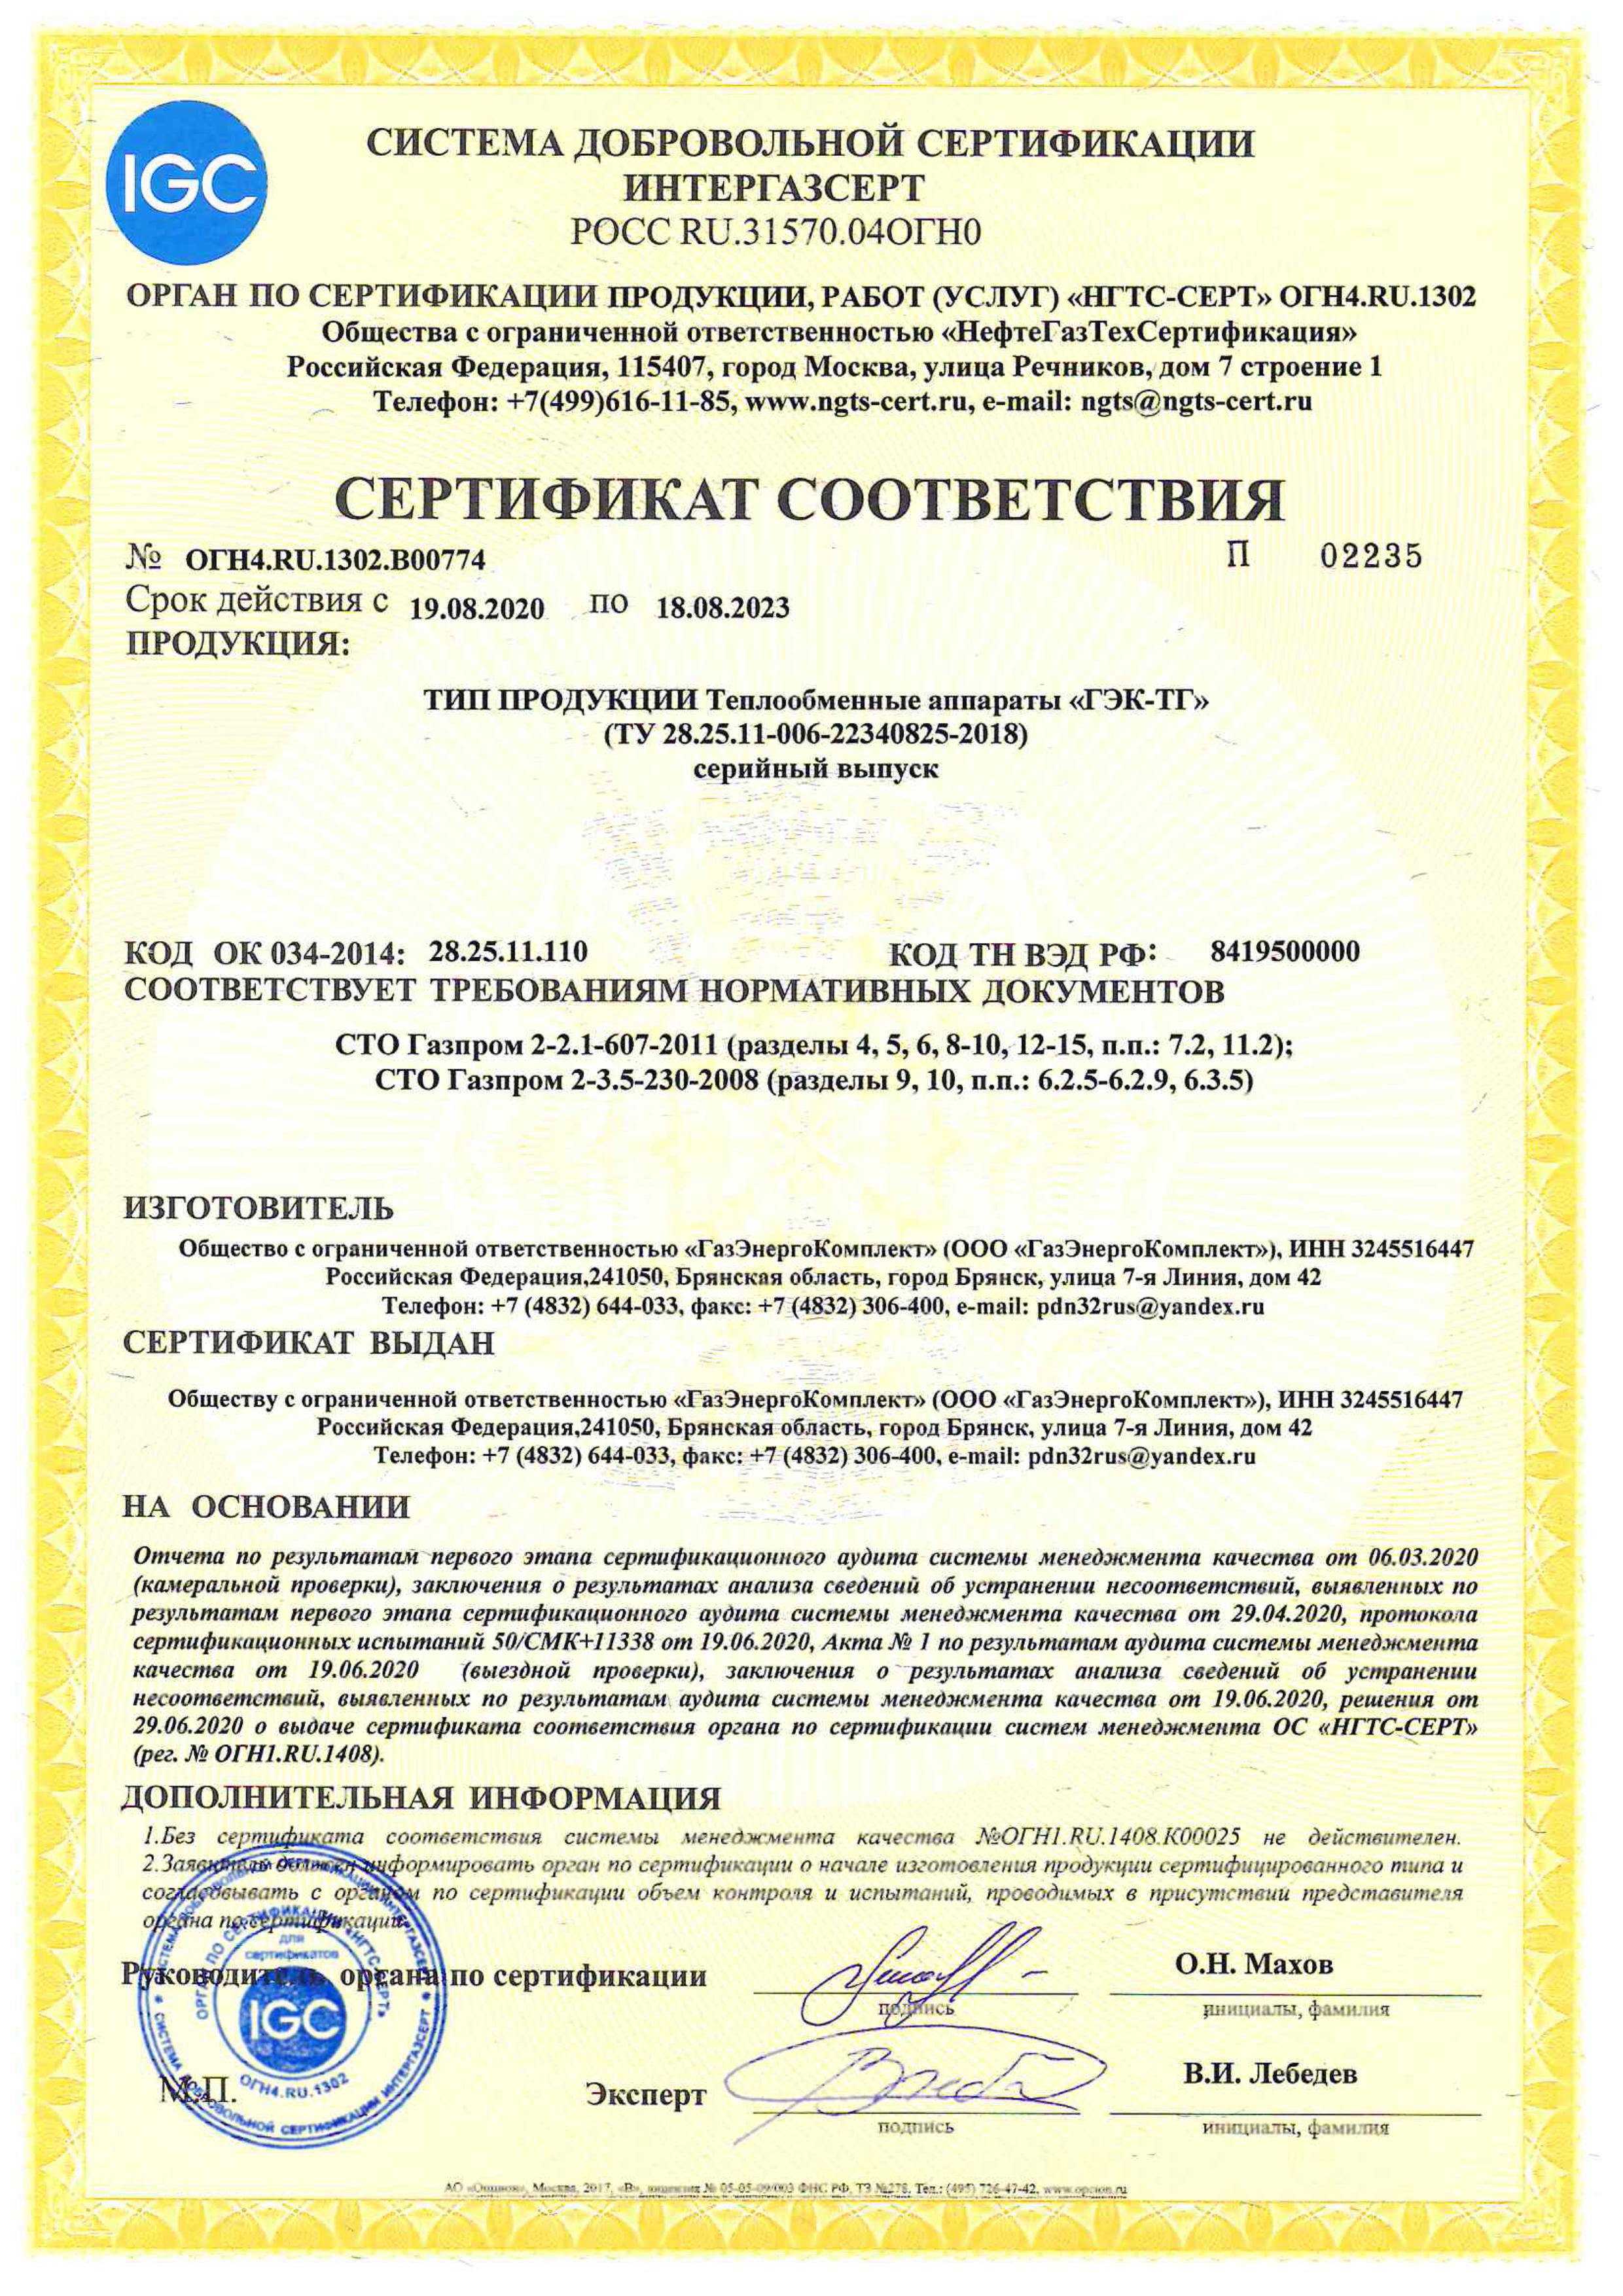 Сертификат соответствия на фильтры-сепараторы газовые, тип ФС.